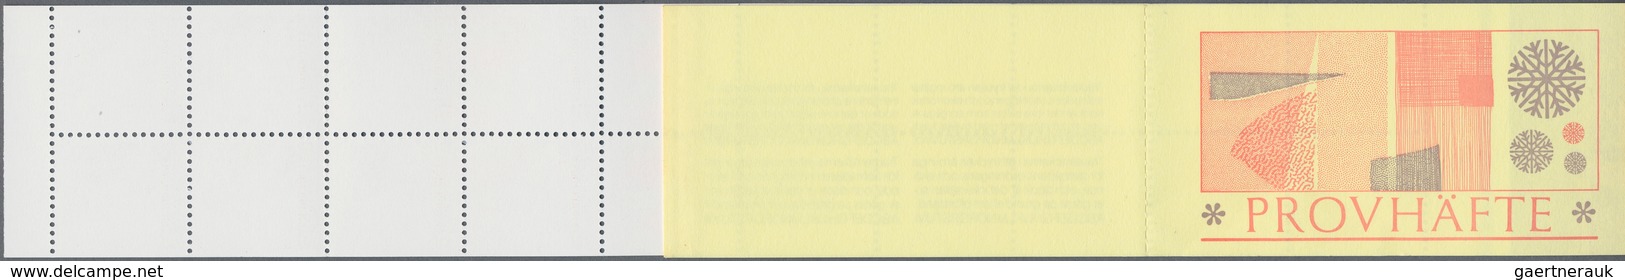 Schweden - Markenheftchen: 1977 (?) Complete Test Booklet (Provhäfte) Containg 20 Test Stamps Printe - 1951-80